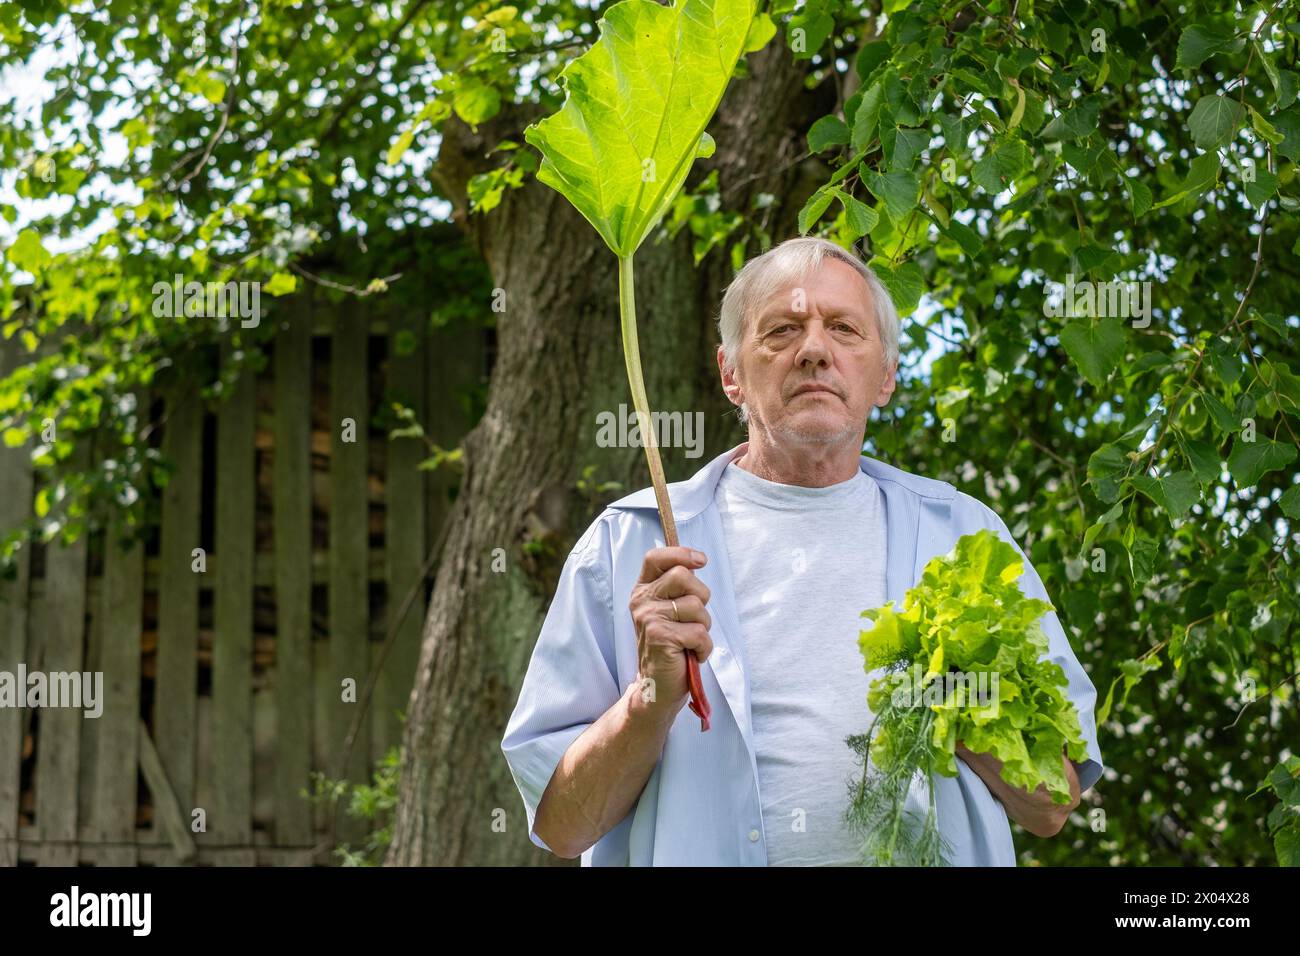 Este anciano, de pie en medio de la vegetación, sosteniendo ruibarbo fresco, ilustra las recompensas y el placer de los esfuerzos personales de jardinería. Foto de alta calidad Foto de stock